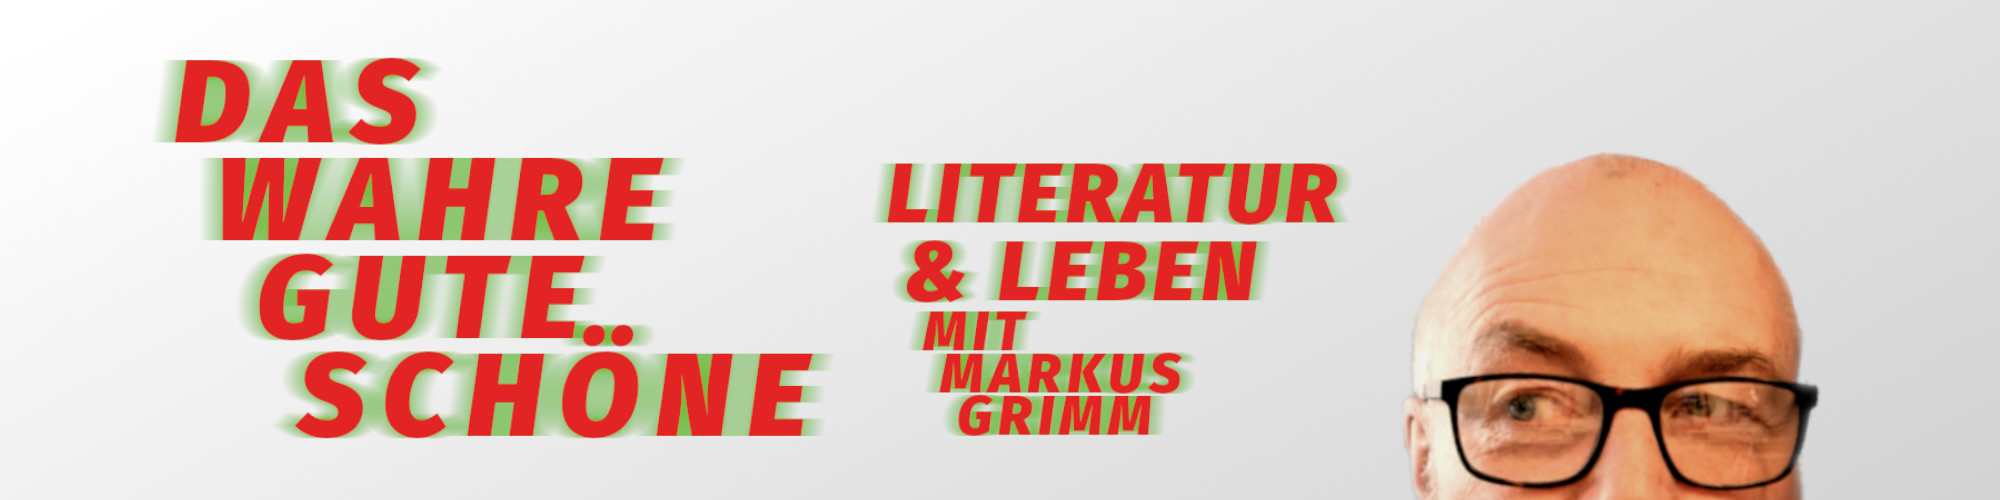 Das Wahre, Gute, Schöne – Literatur & Leben mit Markus Grimm